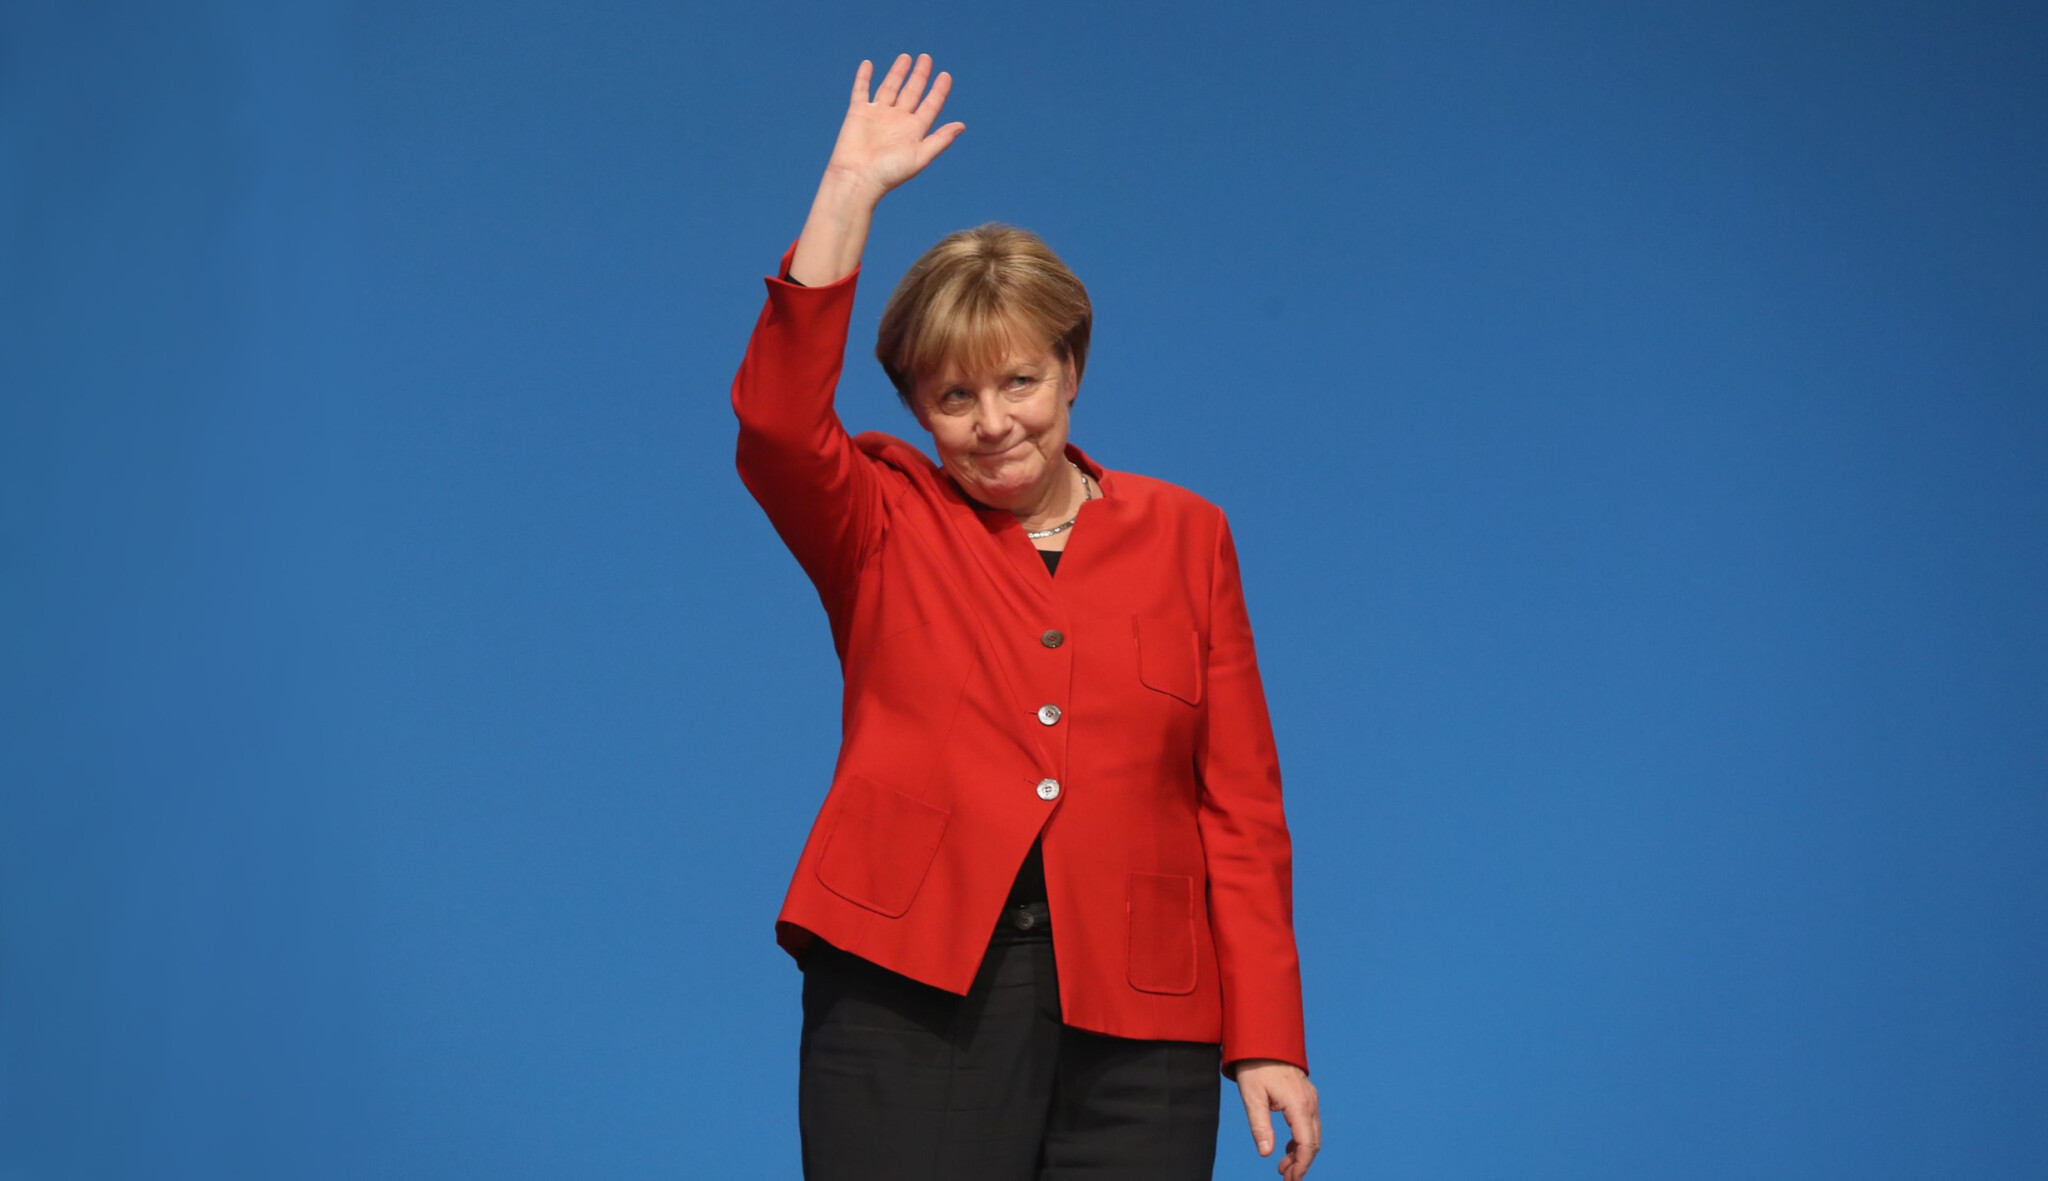 Velké loučení se blíží. Angela Merkel si nechá zahrát východoněmecký punk i církevní skladbu